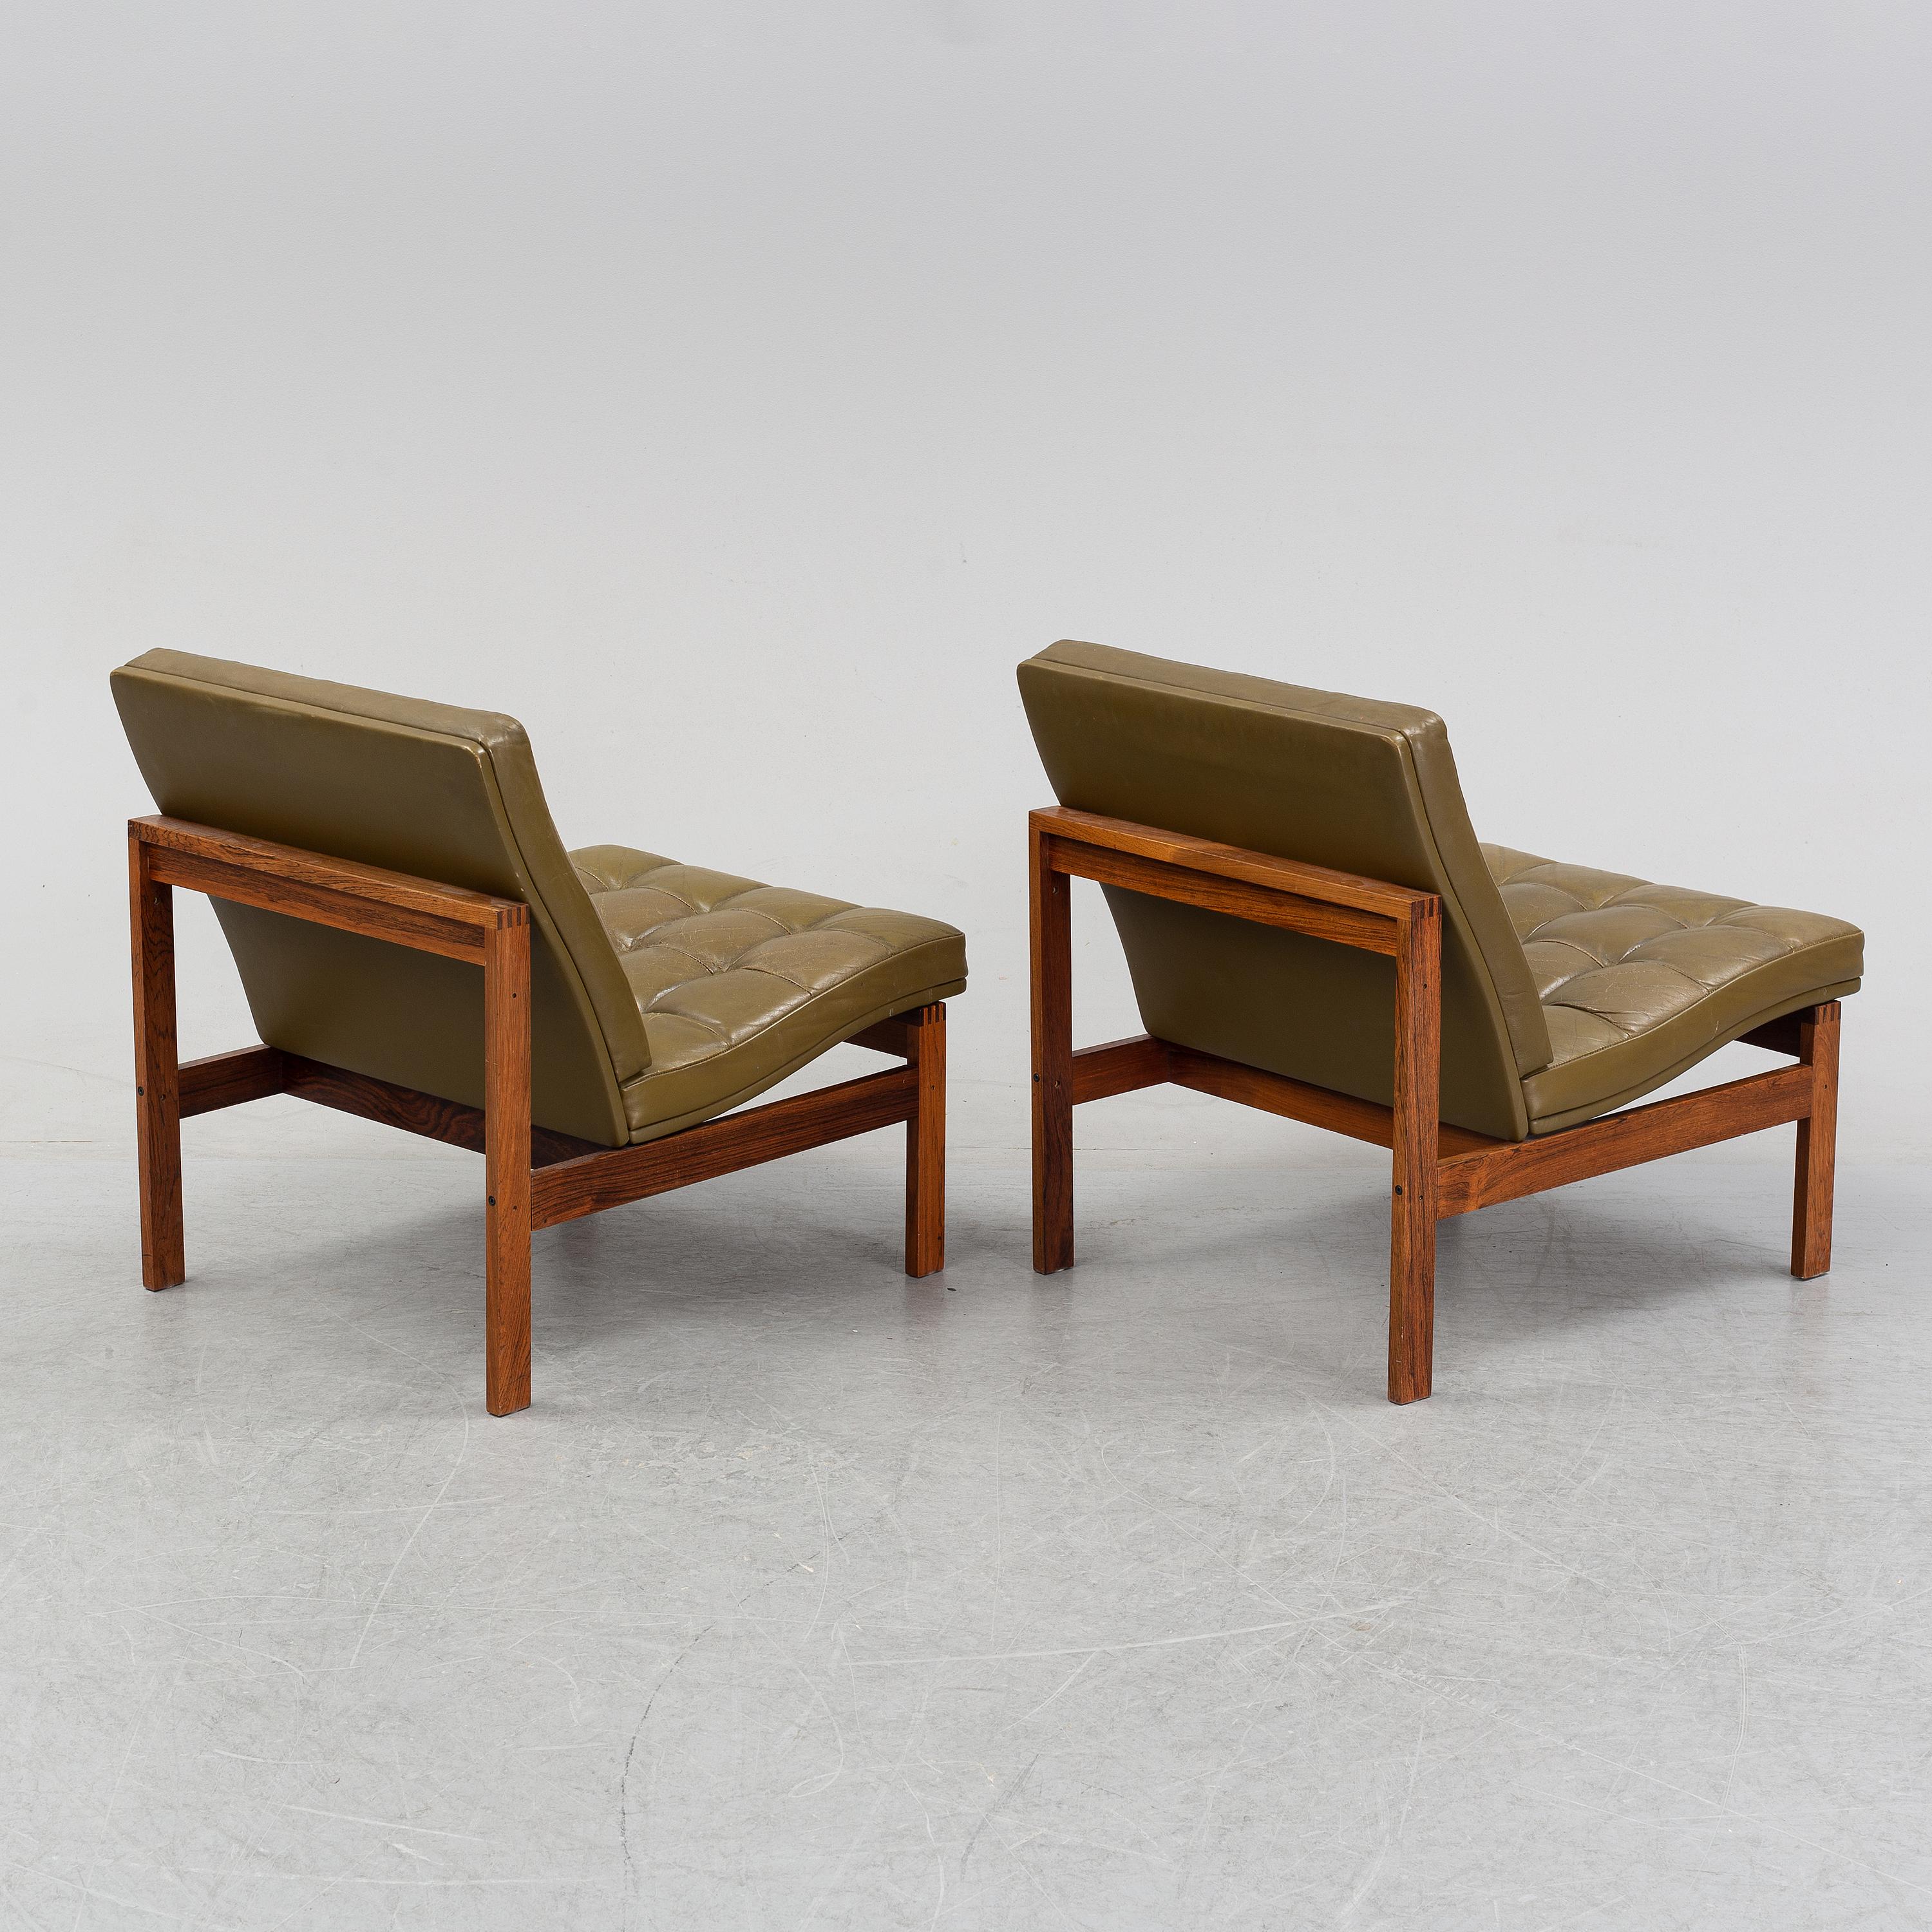 Magnifique ensemble de fauteuils Moduline en cuir vert olive et bois massif d'origine, conçu par Oliver Gjerlov Knudsen et Torben Lind pour France & Son, Danemark 1962. 
 Dans l'ensemble, cet ensemble est en bon état d'origine.
Une paire disponible